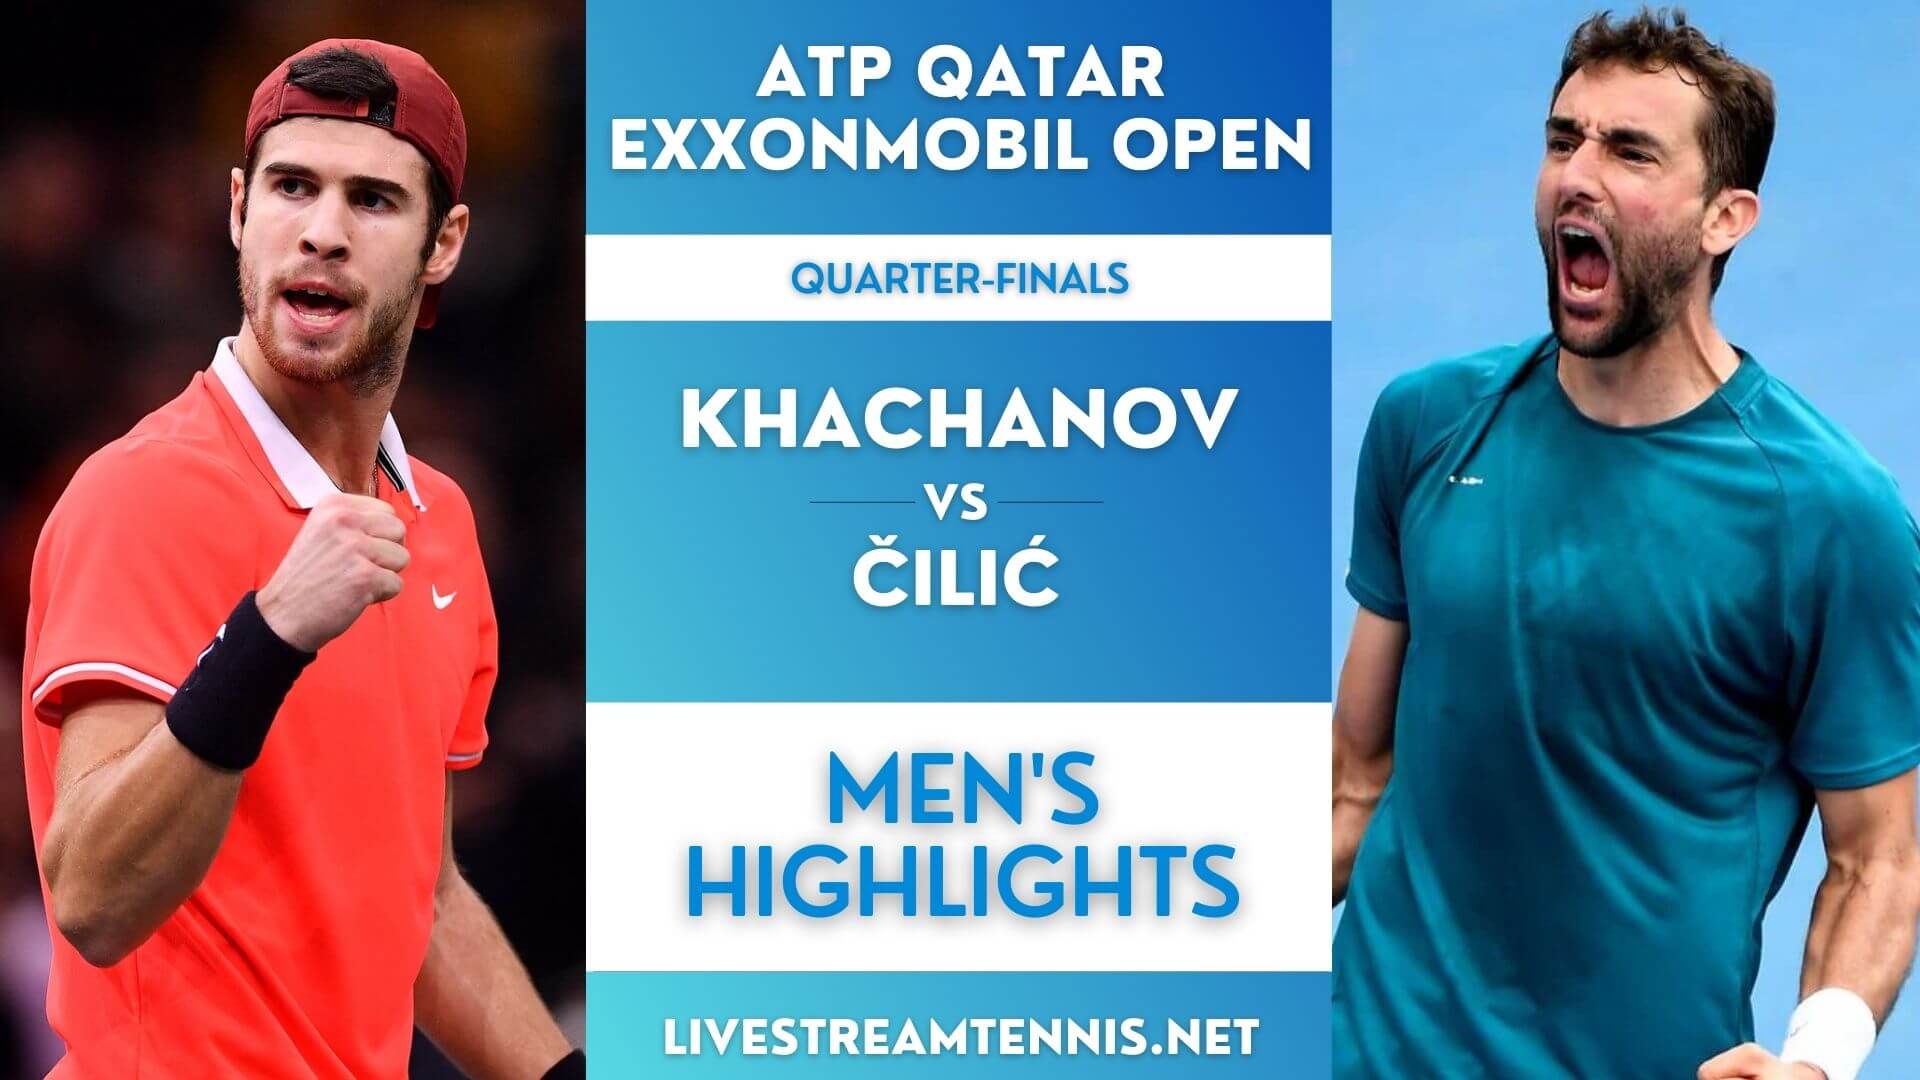 Qatar Open ATP Quarterfinal 1 Highlights 2022